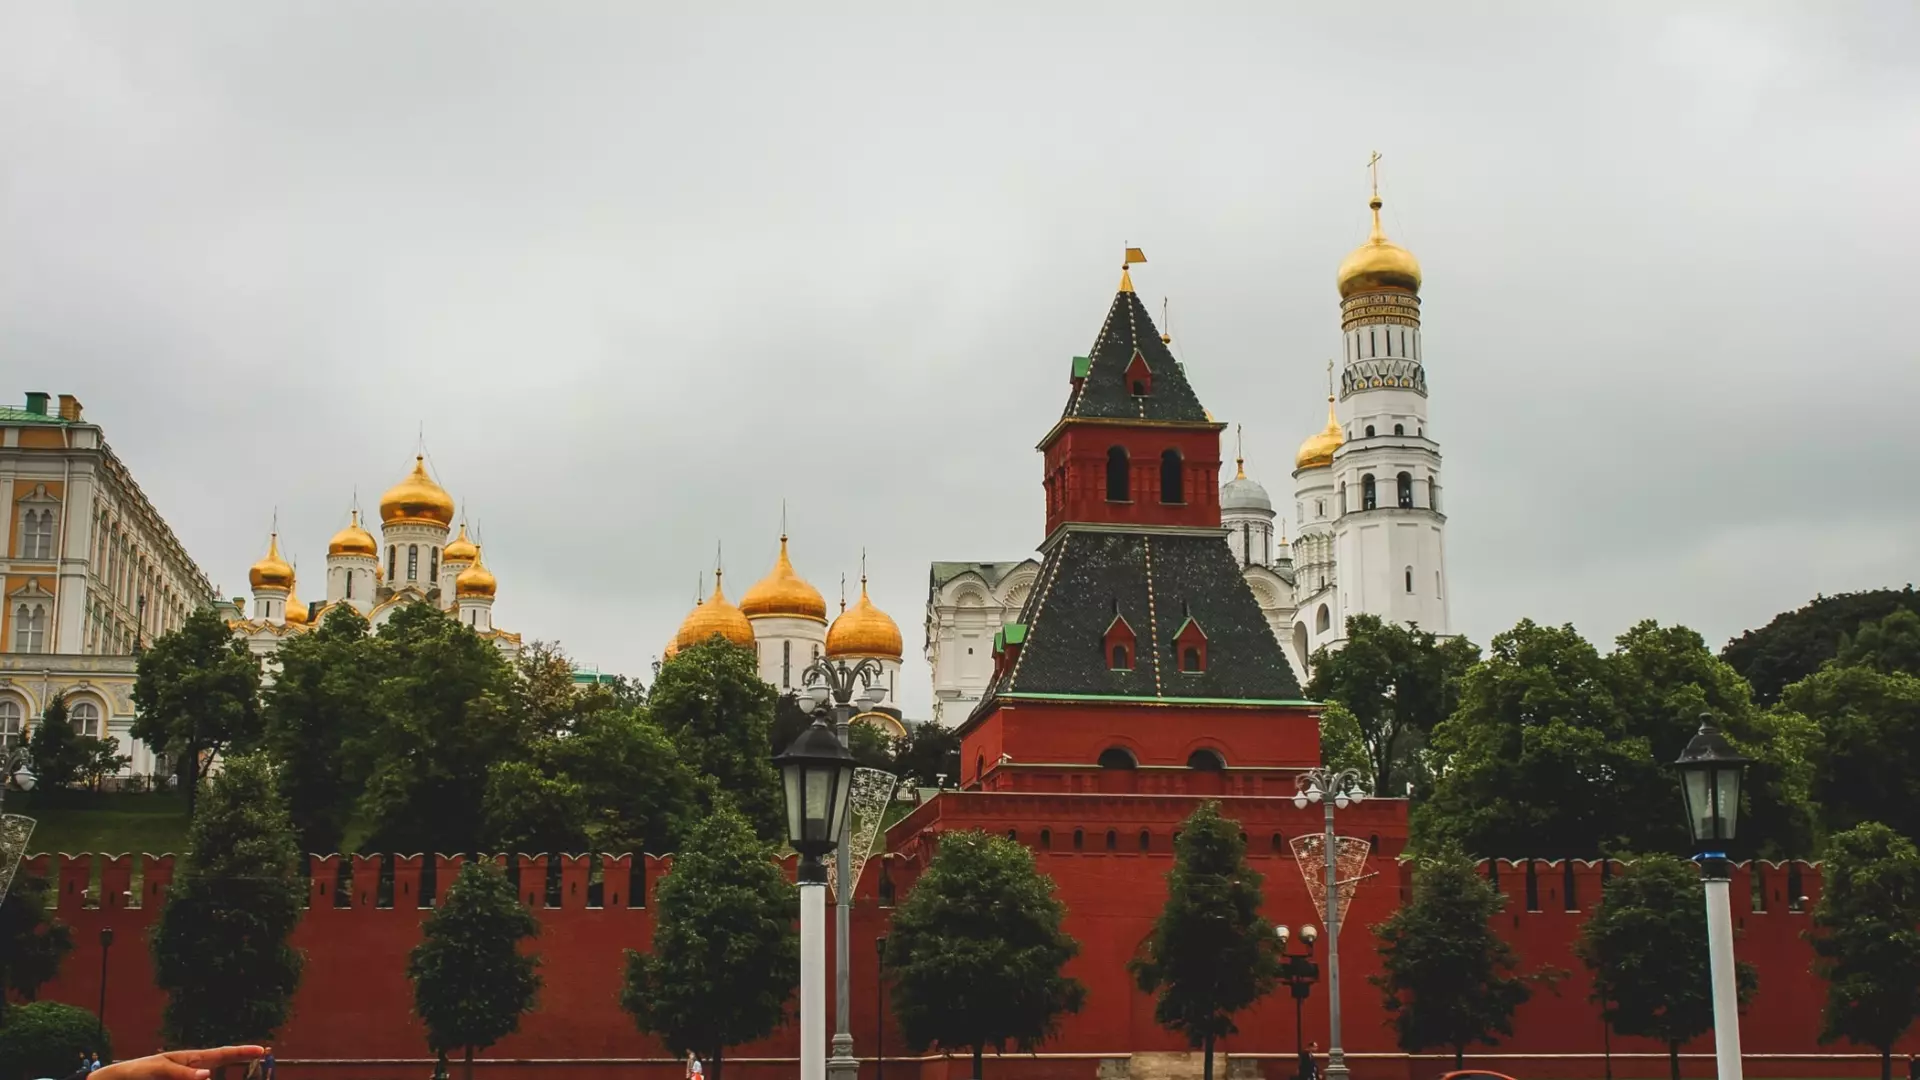 Что привезти в подарок близким из Москвы: 12 небанальных идей